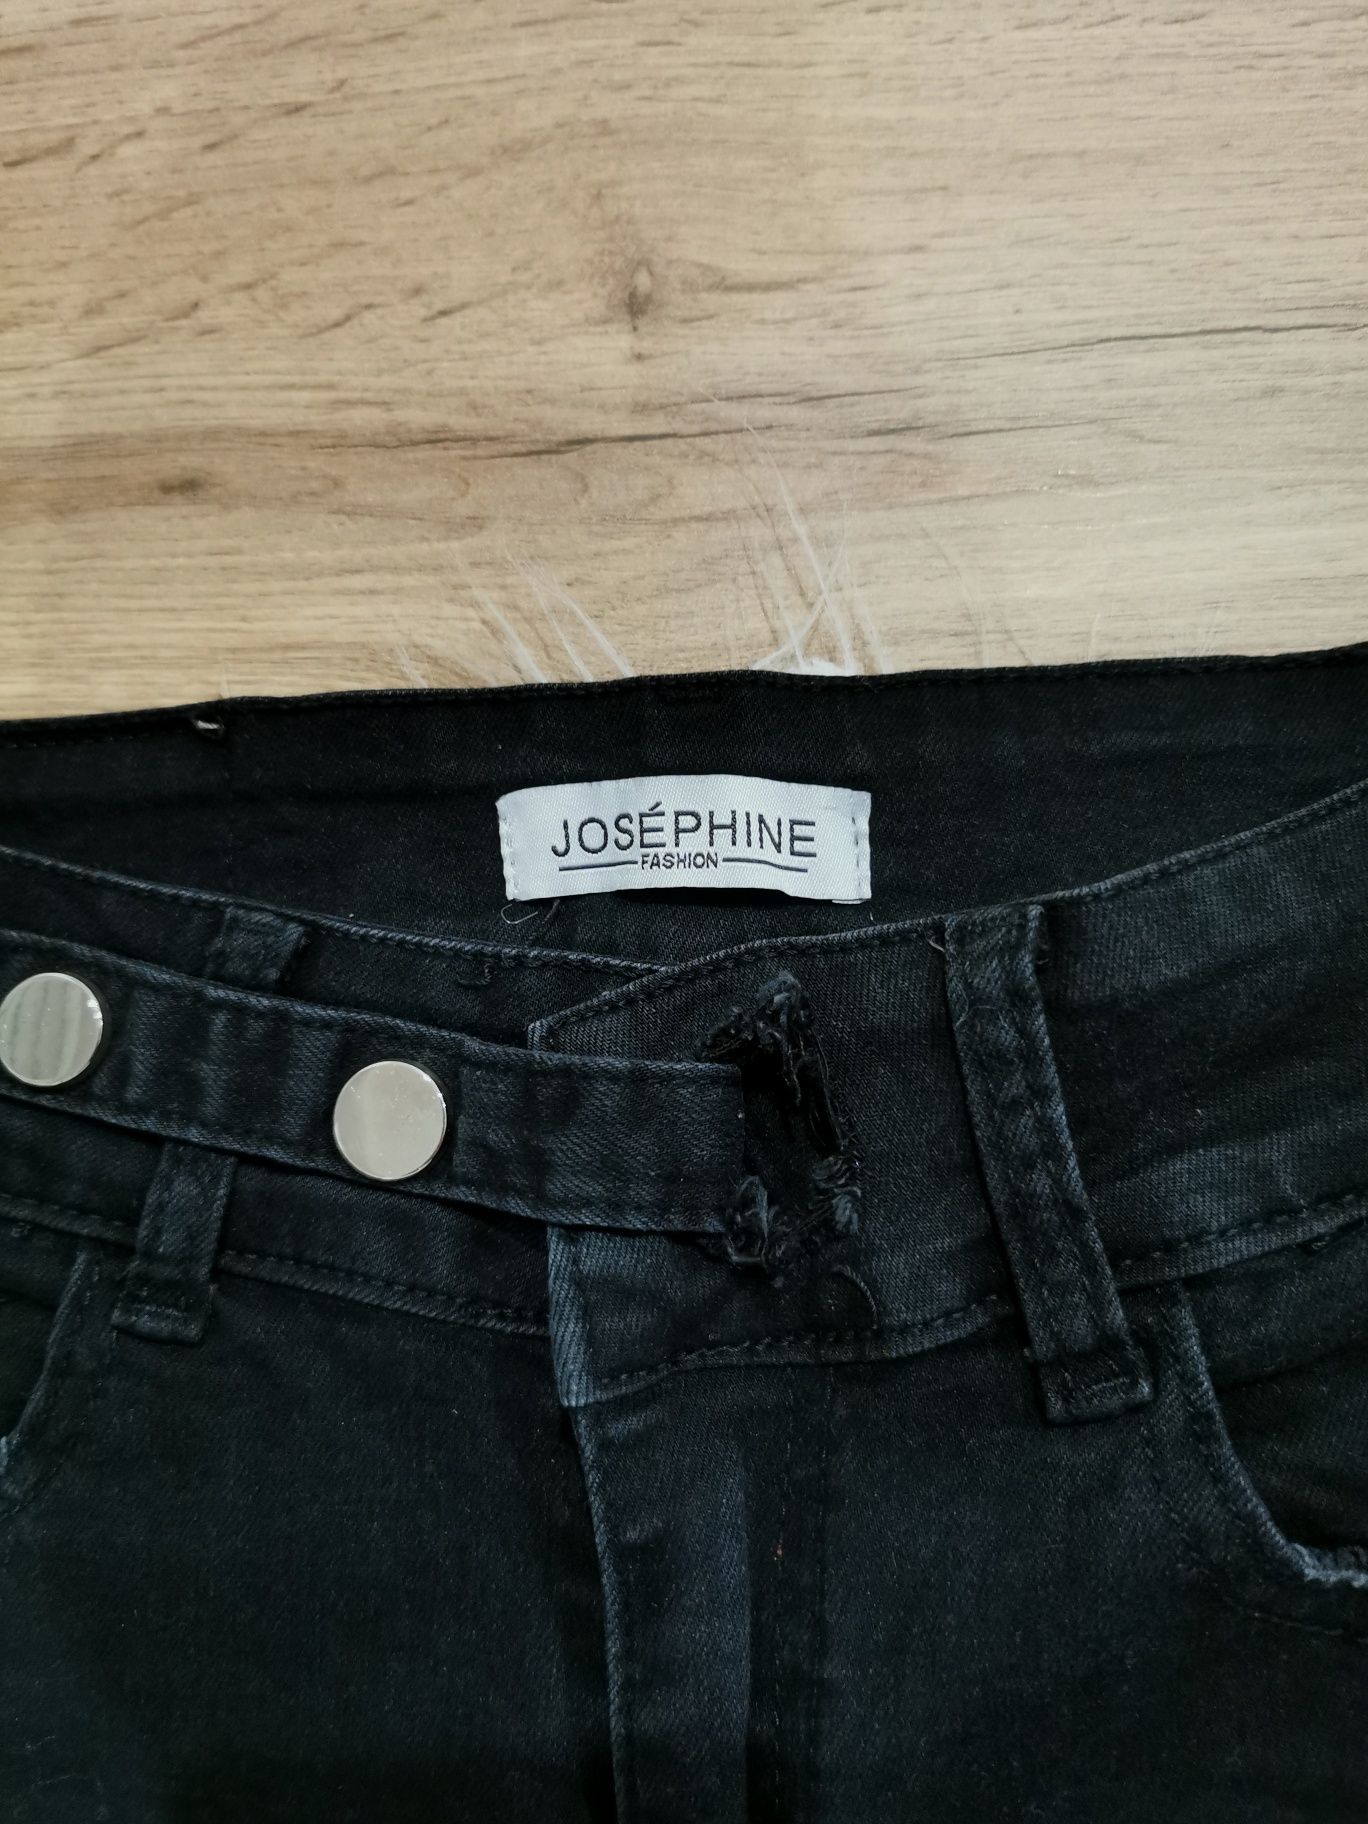 Spodnie jeansowe r. S/M 95% Bawełna